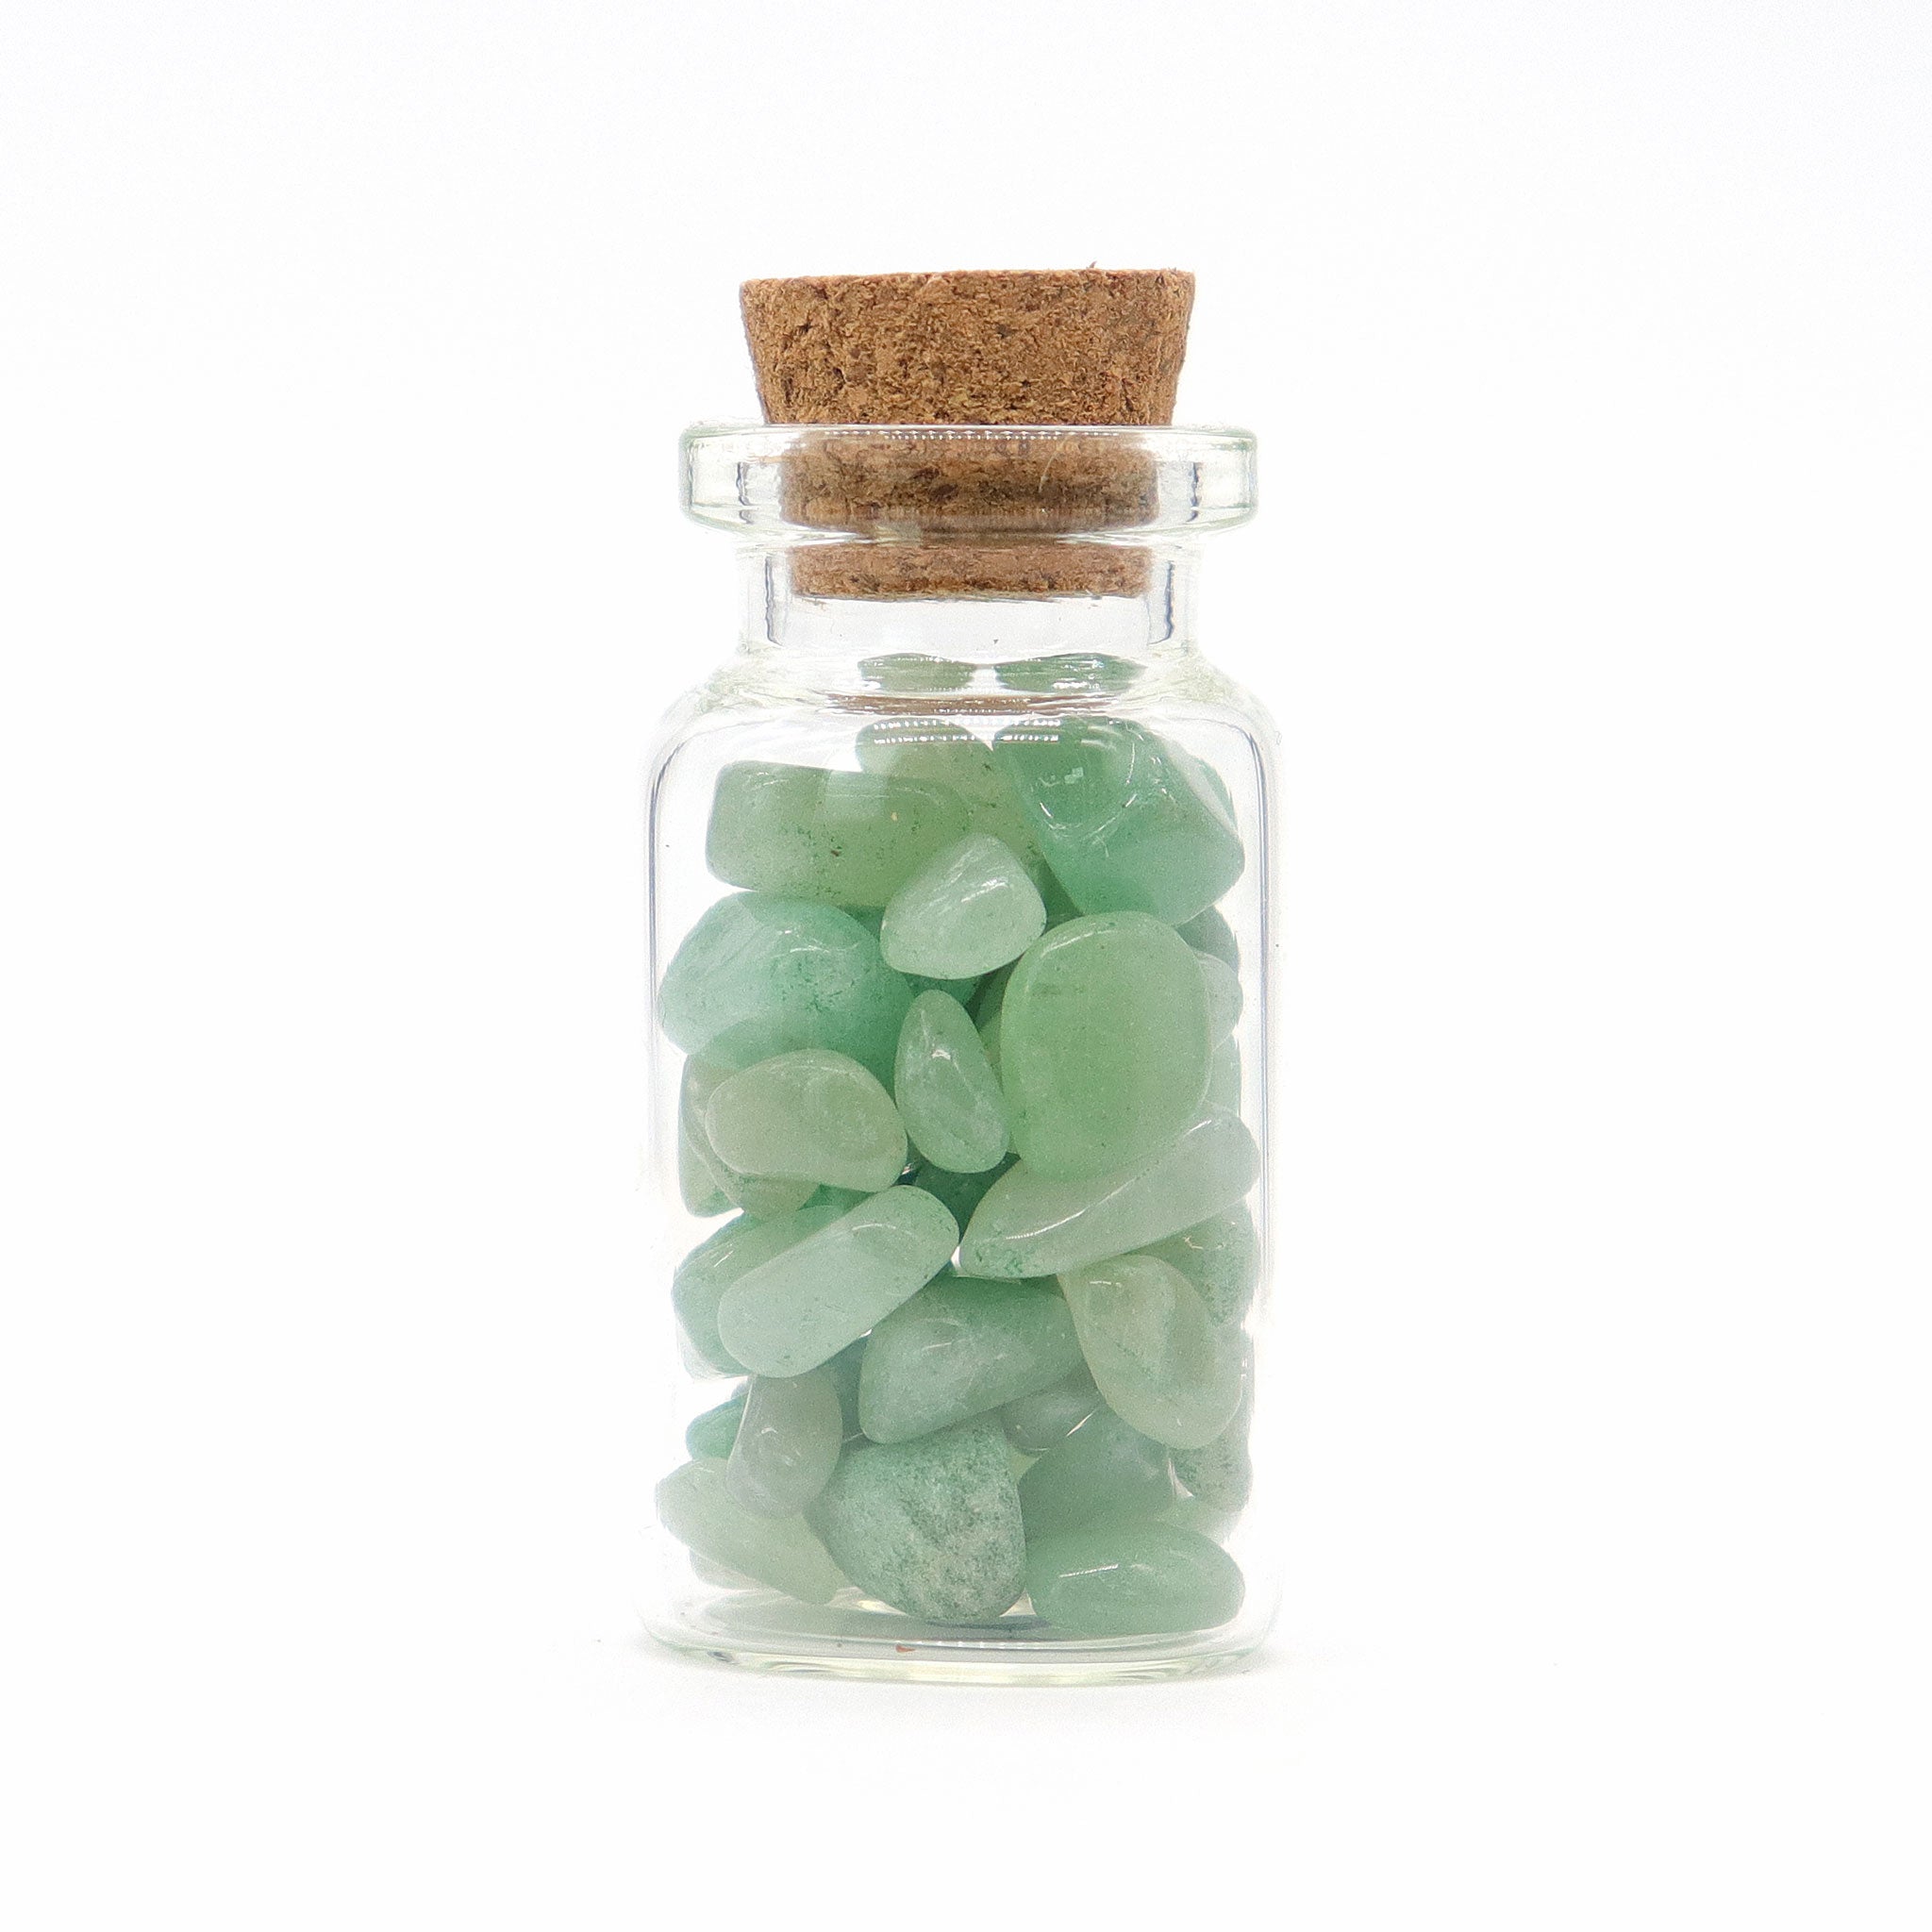 Green Aventurine Gemstones in Bottle